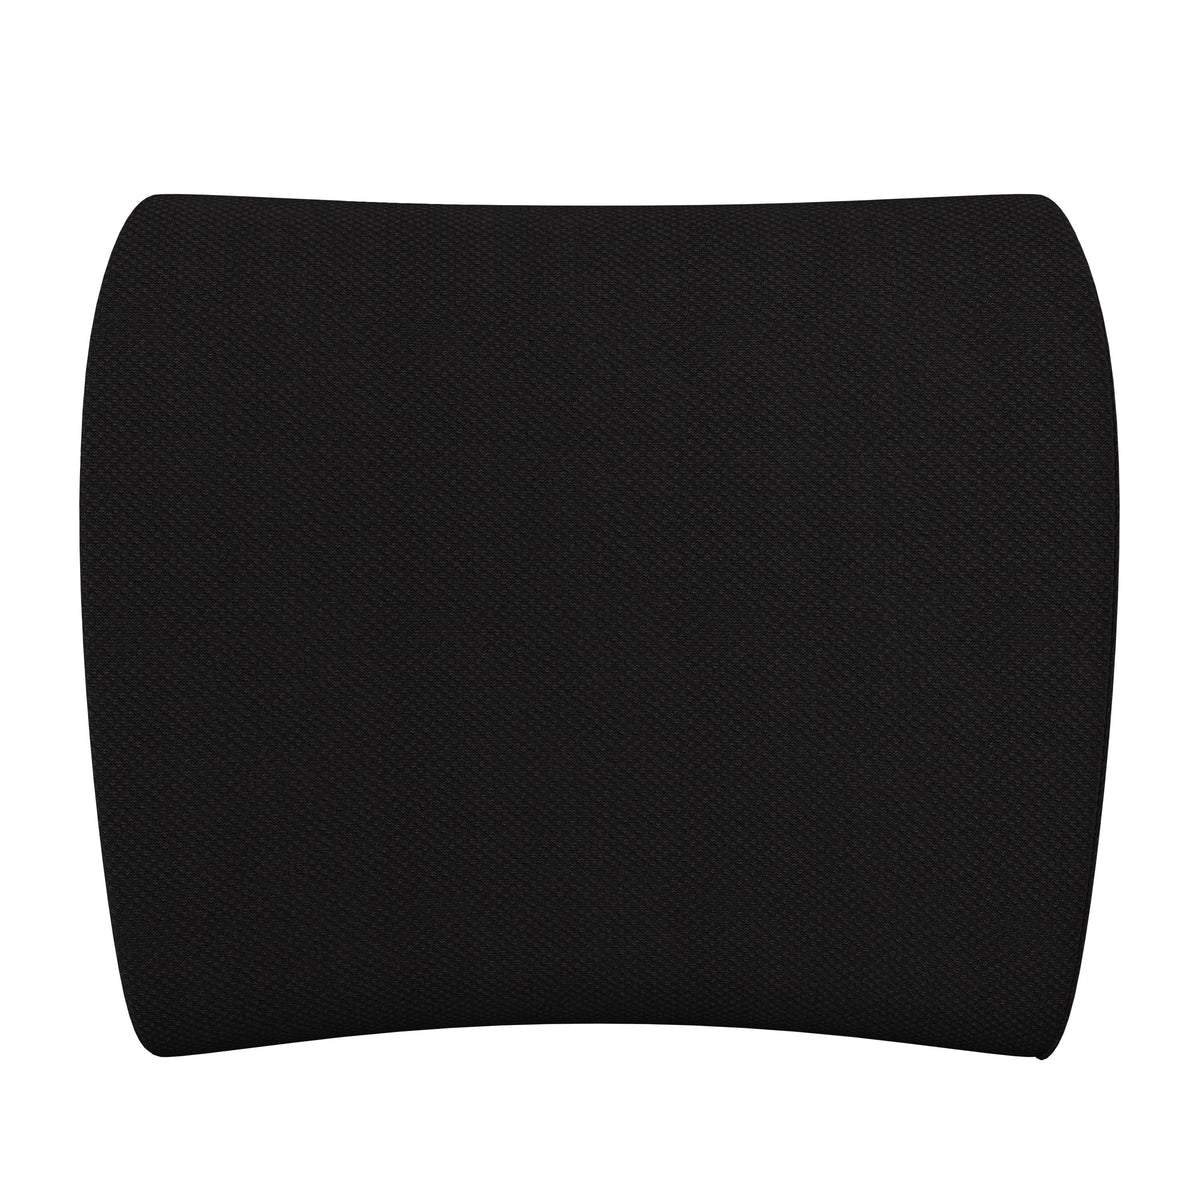 CertiPUR-US Certified Gaming Chair Memory Foam Lumbar Cushion - Black Mesh Cover